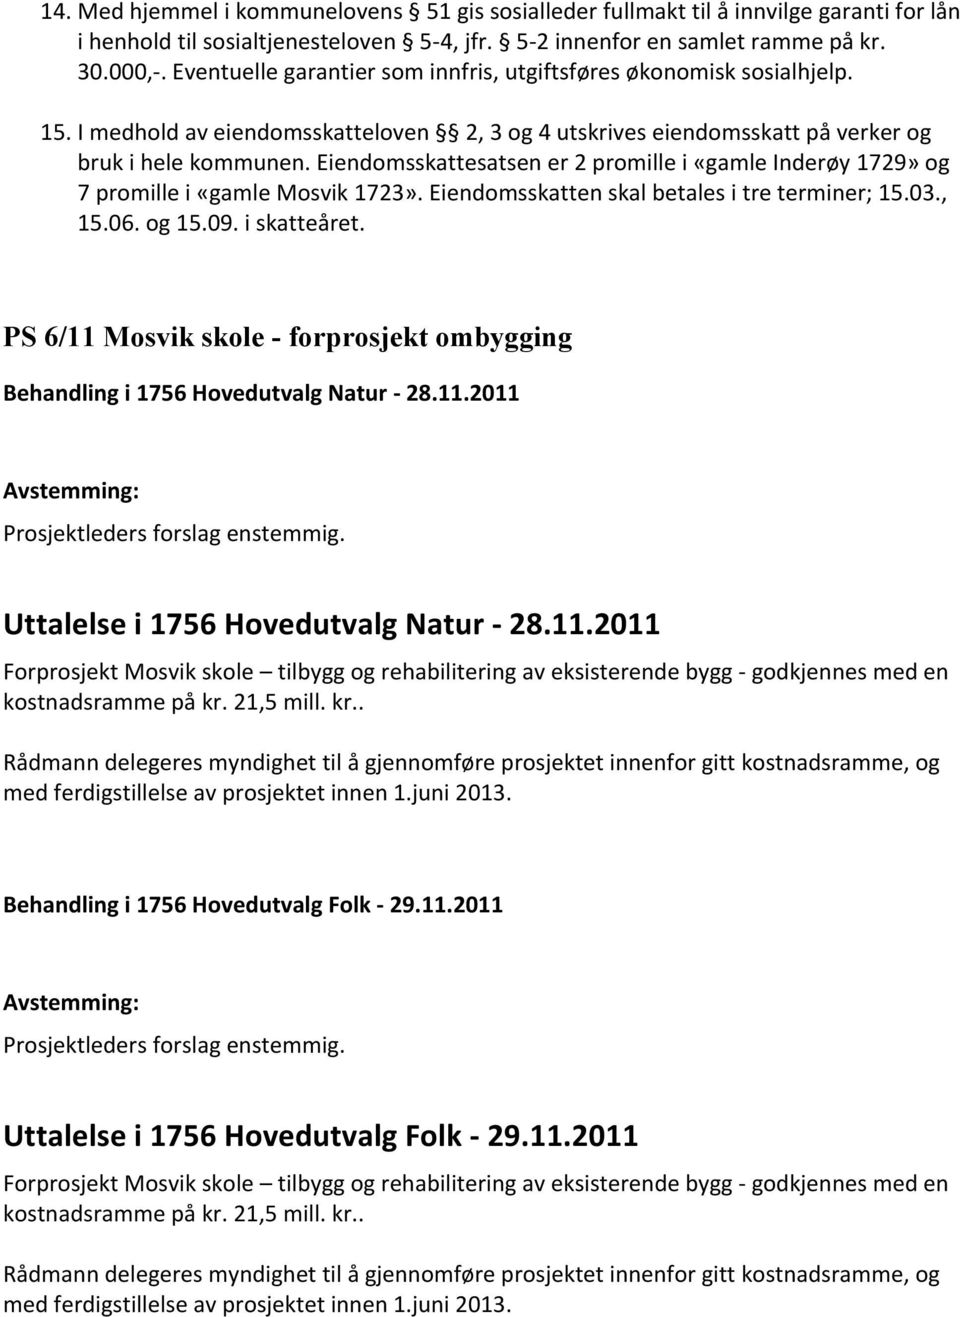 Eiendomsskattesatsen er 2 promille i «gamle Inderøy 1729» og 7 promille i «gamle Mosvik 1723». Eiendomsskatten skal betales i tre terminer; 15.03., 15.06. og 15.09. i skatteåret.